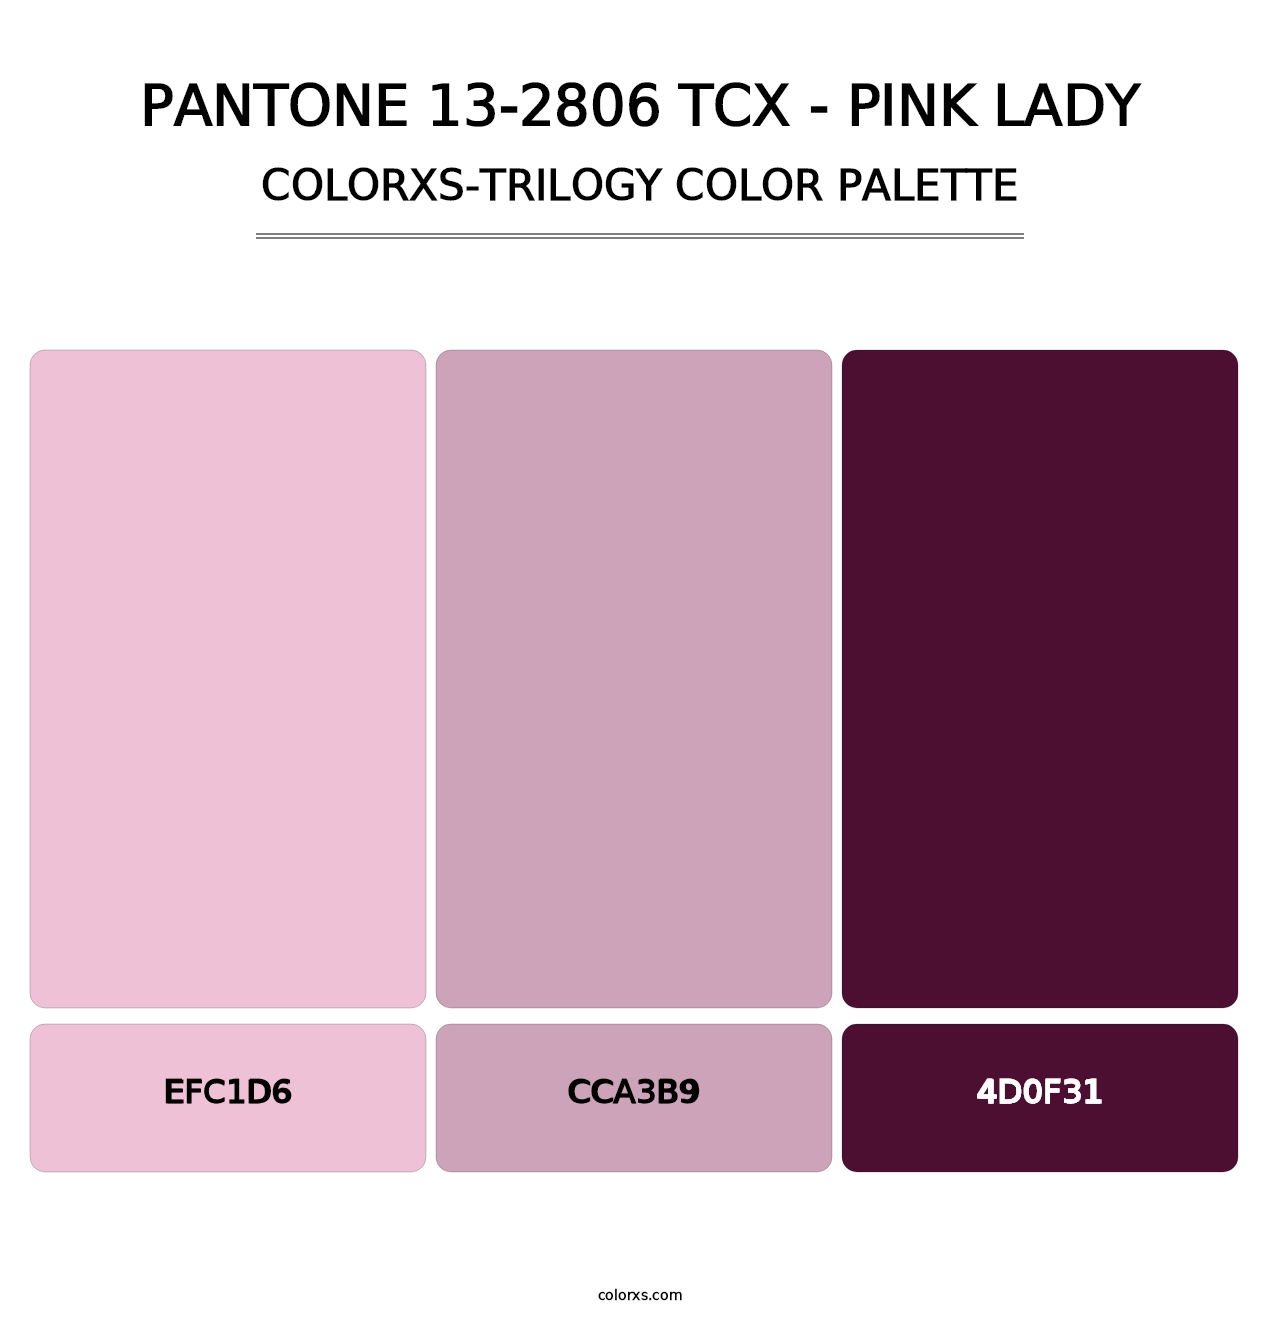 PANTONE 13-2806 TCX - Pink Lady - Colorxs Trilogy Palette